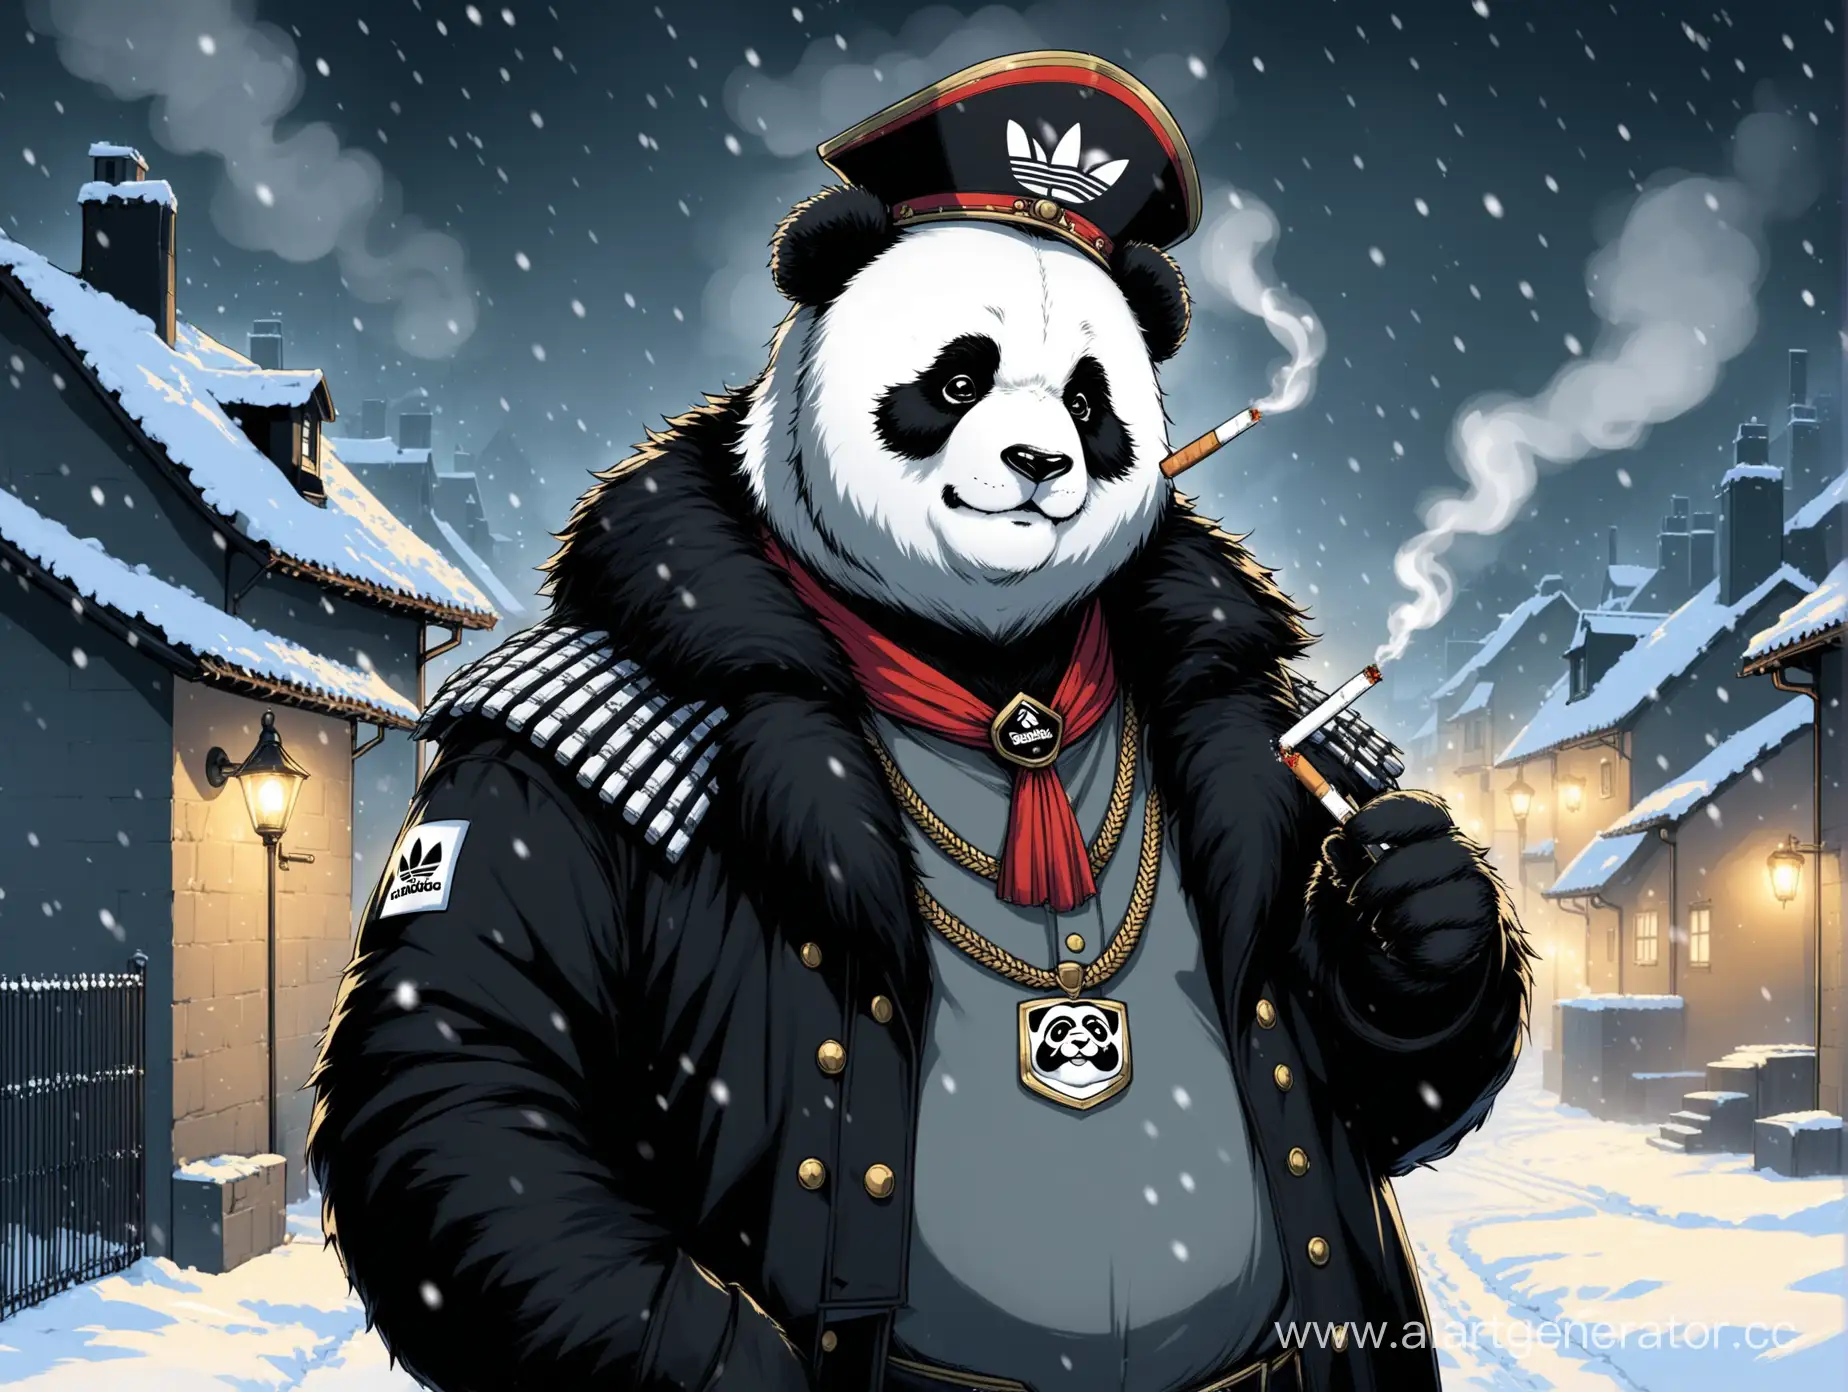 Думер панда фурри с гусарскими усами в адидасе курит сигарету грустный на фоне серых домов из 90-ых идет снег ночью